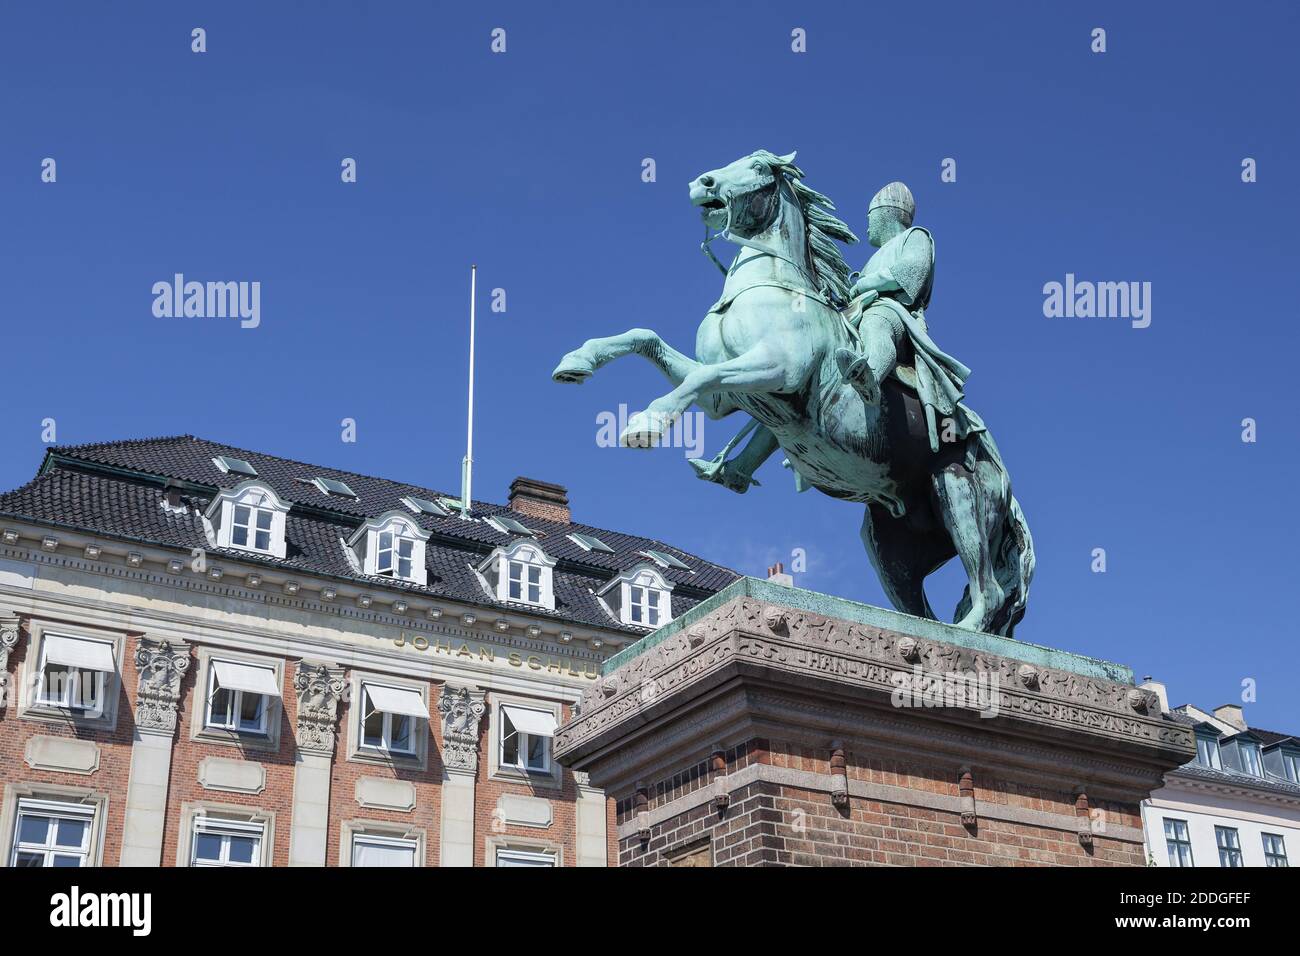 Géographie / Voyage, Danemark, Copenhague, statue équestre sur la place Hojbro, Plads Hojbro, Copenhague, droits-supplémentaires-décharge-Info-non-disponible Banque D'Images